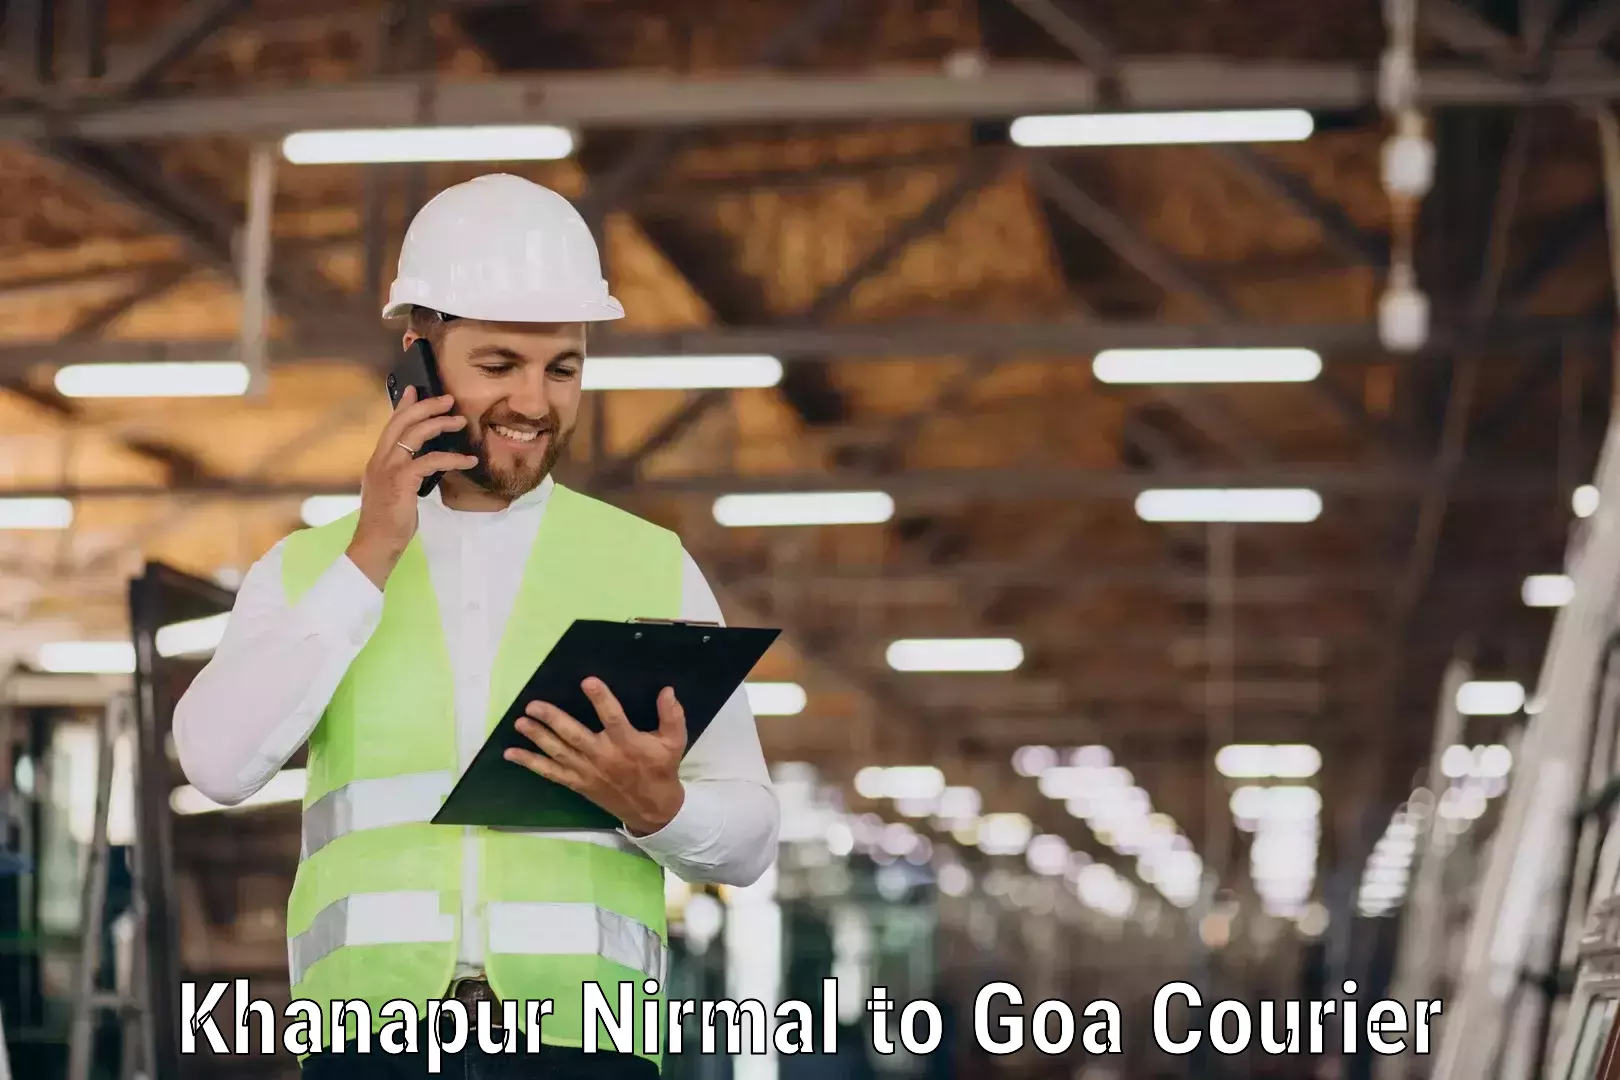 Quality courier services Khanapur Nirmal to Vasco da Gama